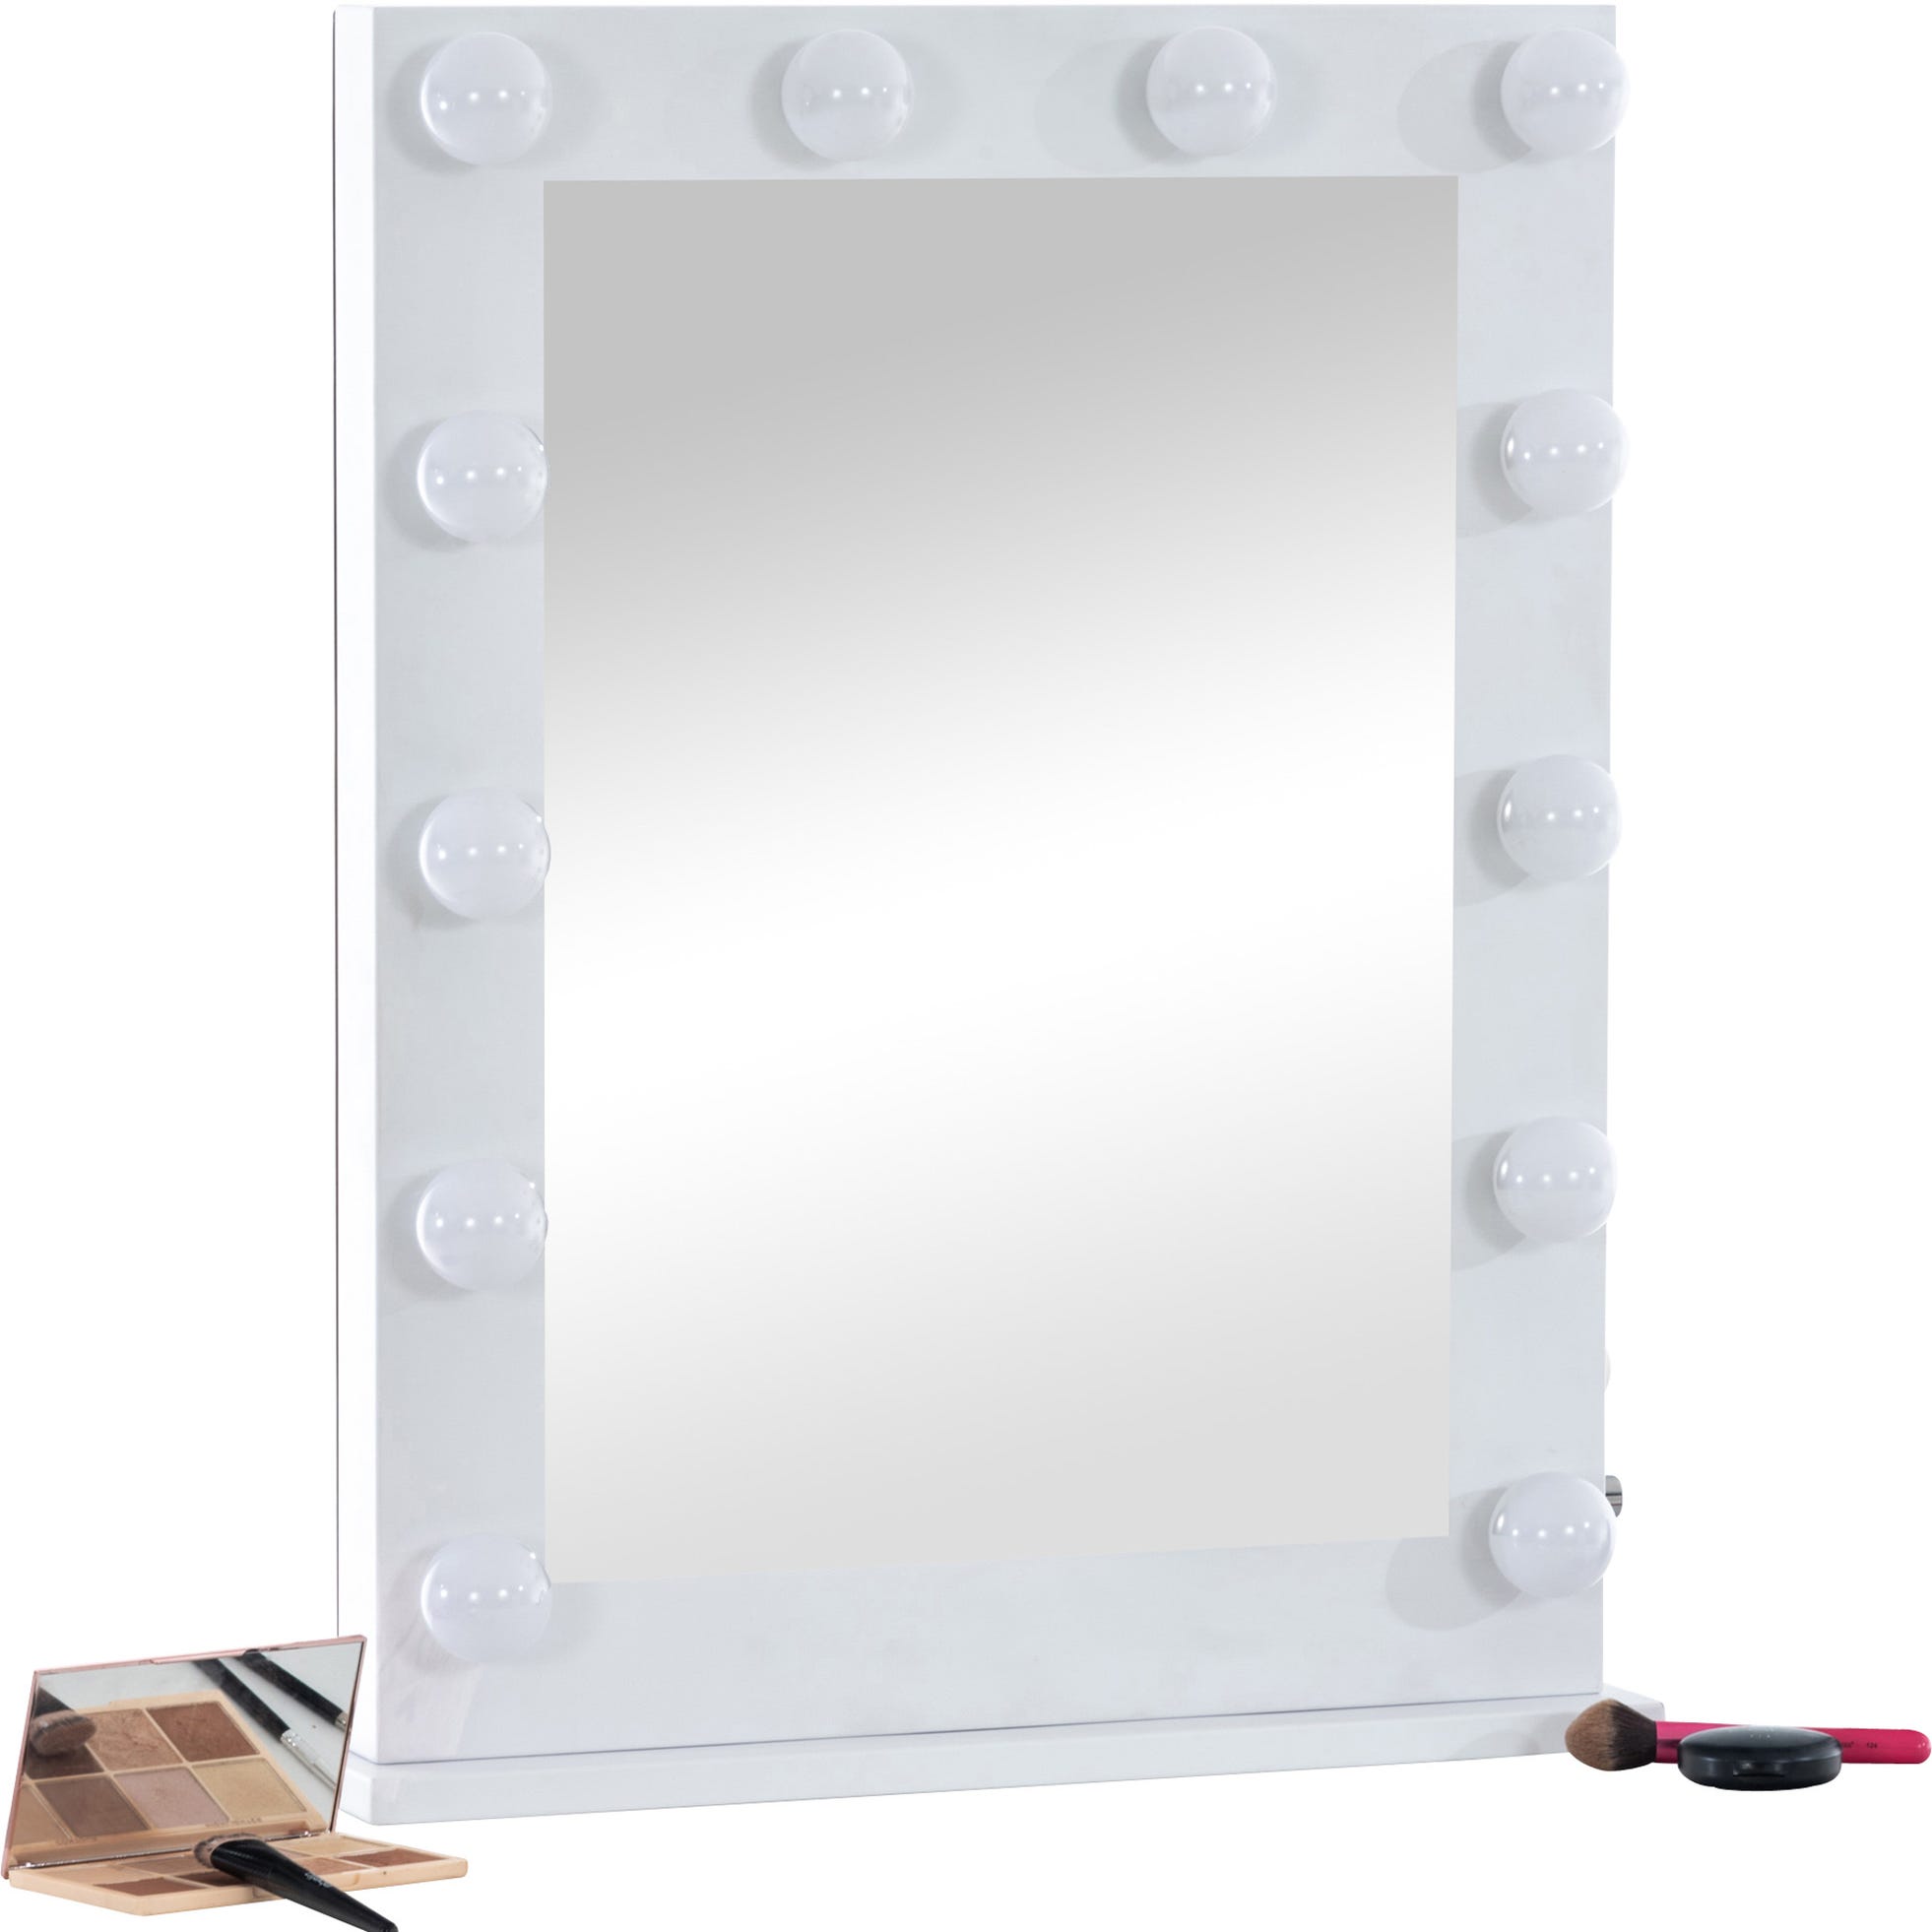 Lina Home-Koléa - Miroir Maquillage Led disponible Blanc et Rose 💄😍🎁  #miroiroriginal #miroirmaquillagelumineux #miroirmaquillage #miroir  #linahomekolea #maquillage